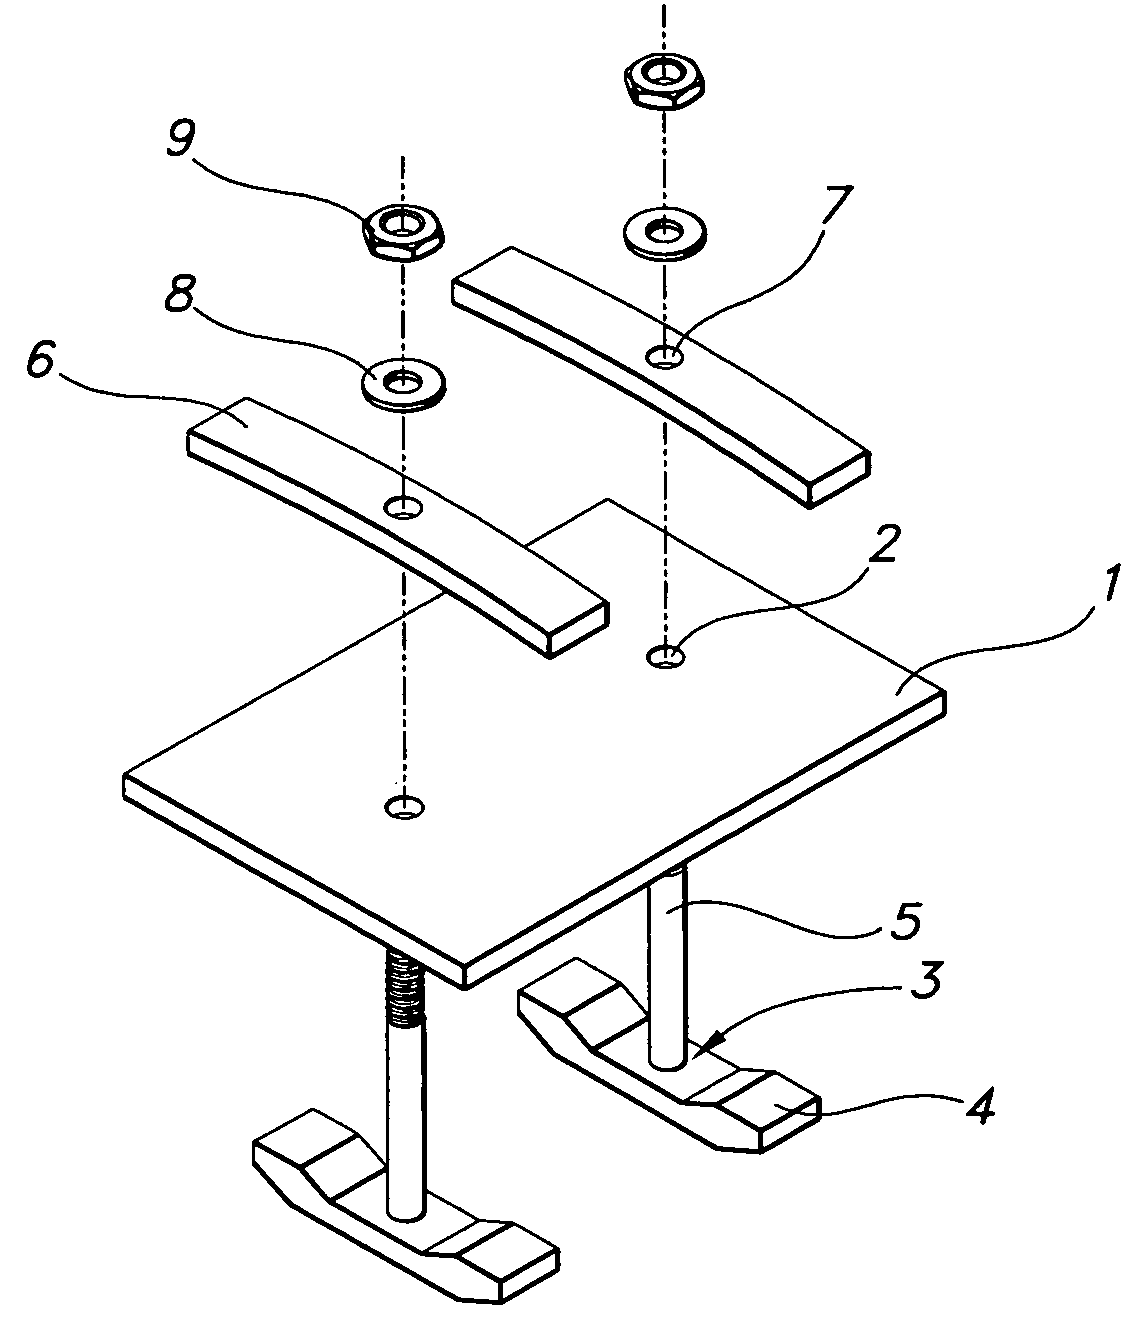 Screen repair apparatus and method